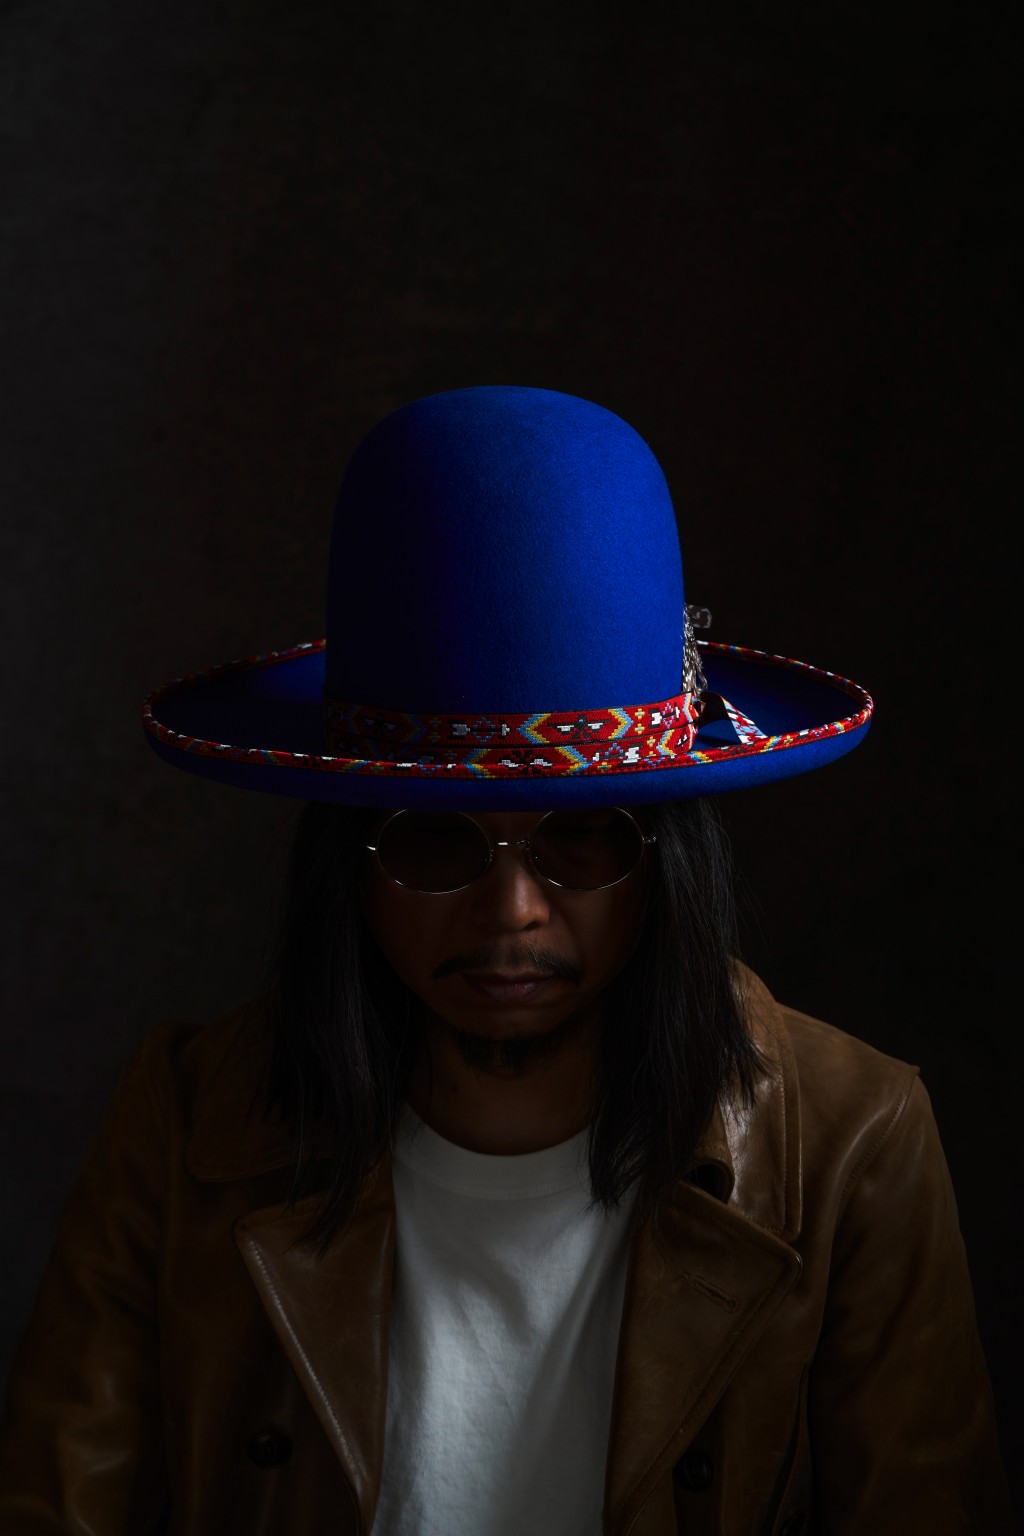 王雙駿說每頂帽都有不同的音樂故事。